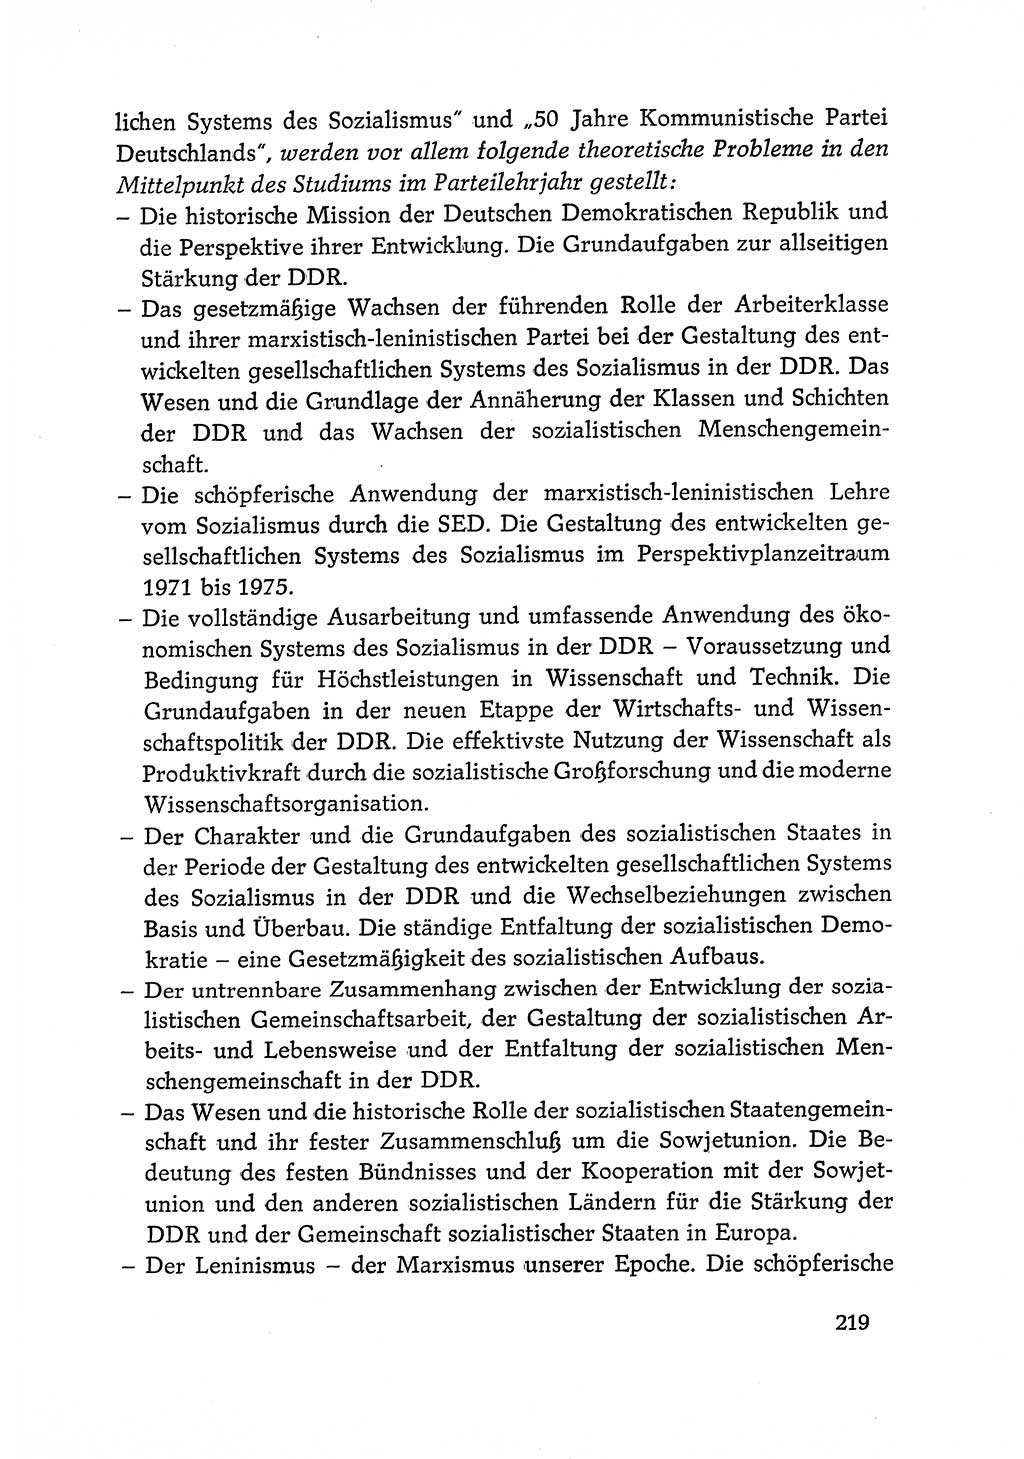 Dokumente der Sozialistischen Einheitspartei Deutschlands (SED) [Deutsche Demokratische Republik (DDR)] 1968-1969, Seite 219 (Dok. SED DDR 1968-1969, S. 219)